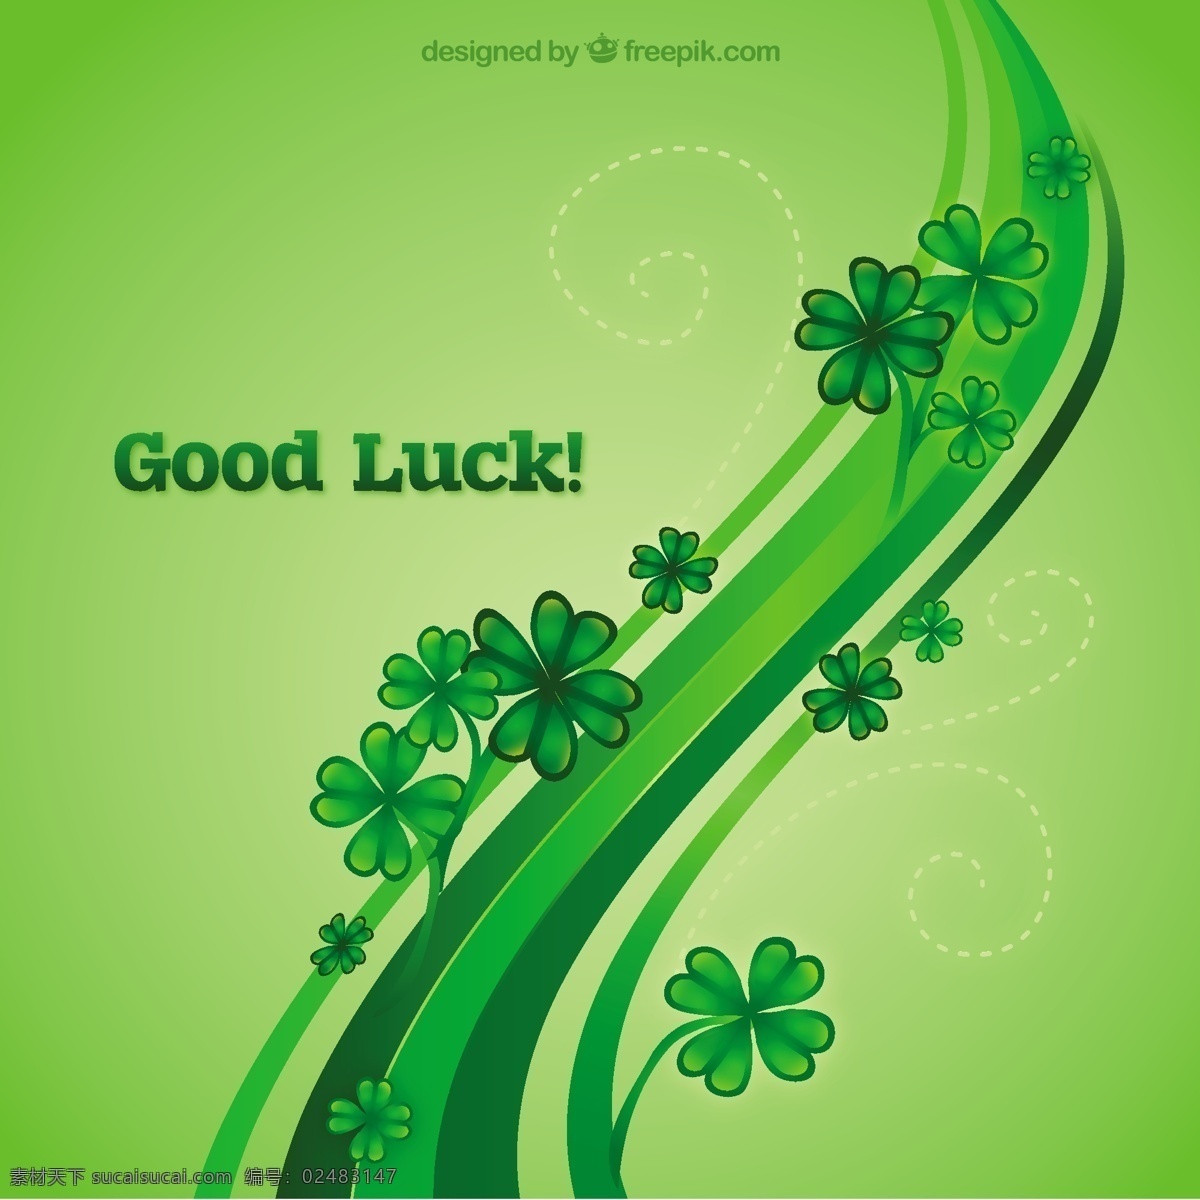 运气好的背景 背景 抽象的 绿色的 绿色的背景 节日 三叶草 好 背景绿色 爱尔兰 一天 幸运的 圣帕特里克 运气 好运 帕特里克 圣人 传统